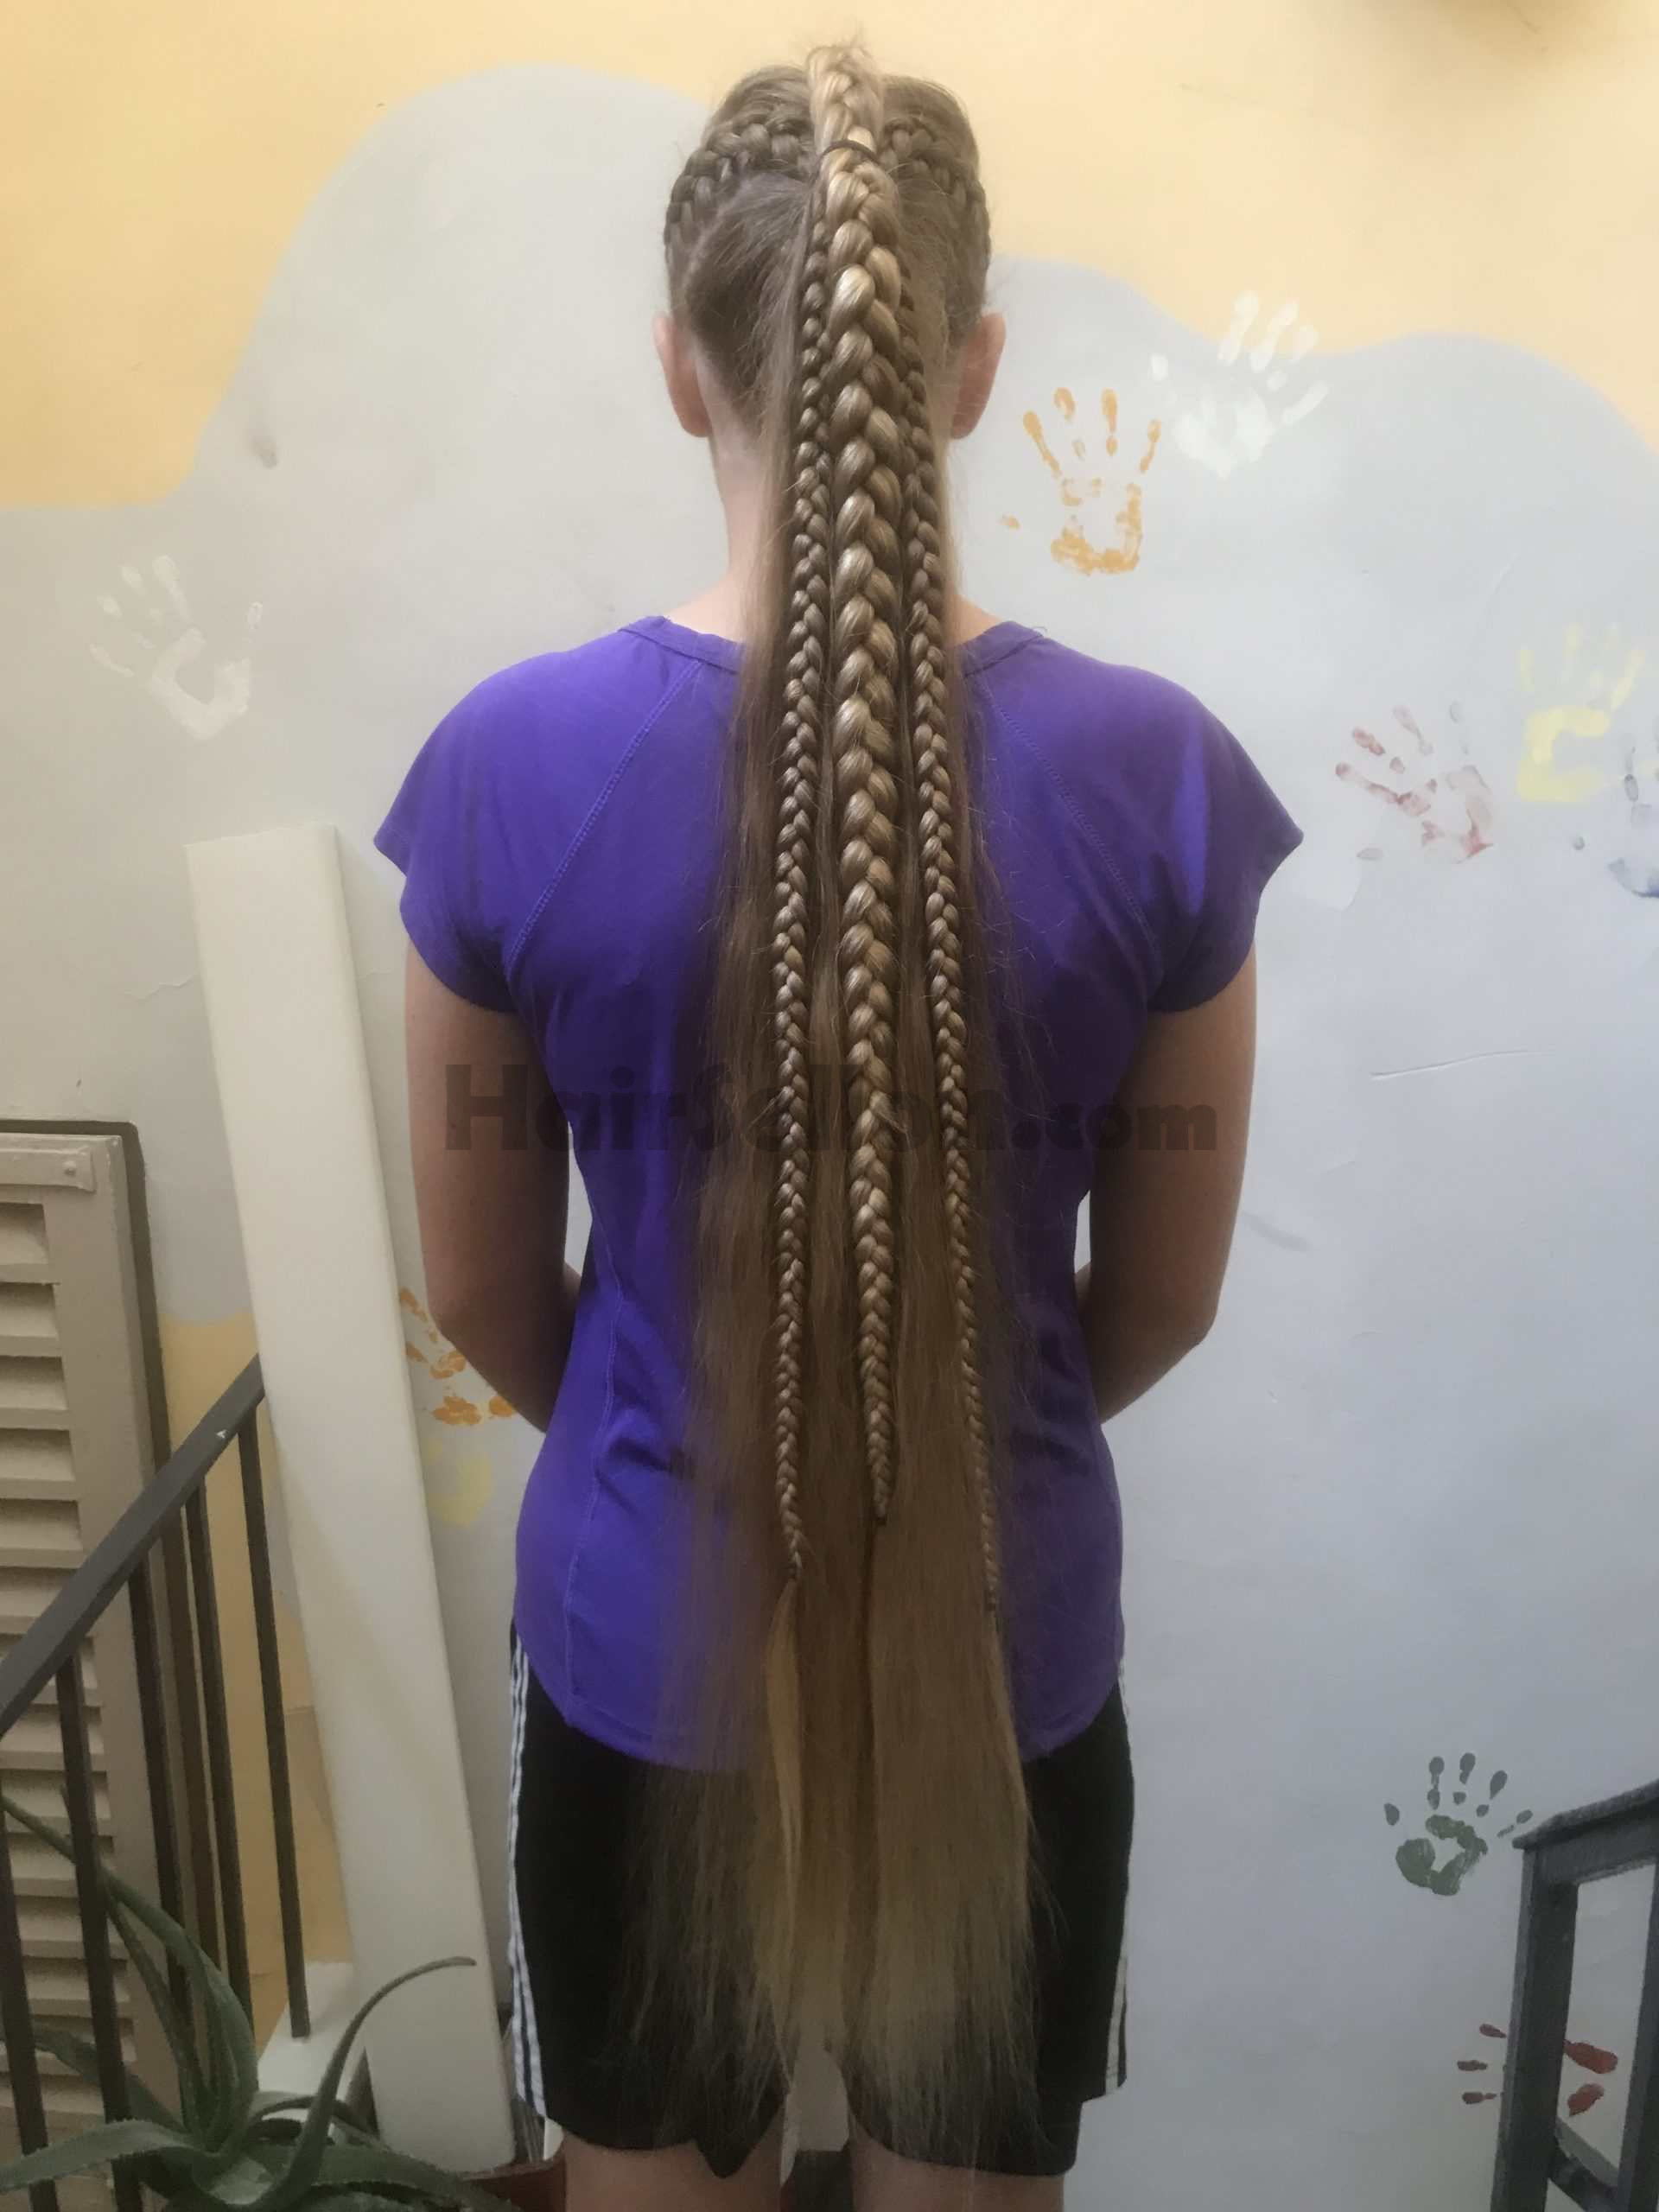 Hair in braids (photo taken September 2021)